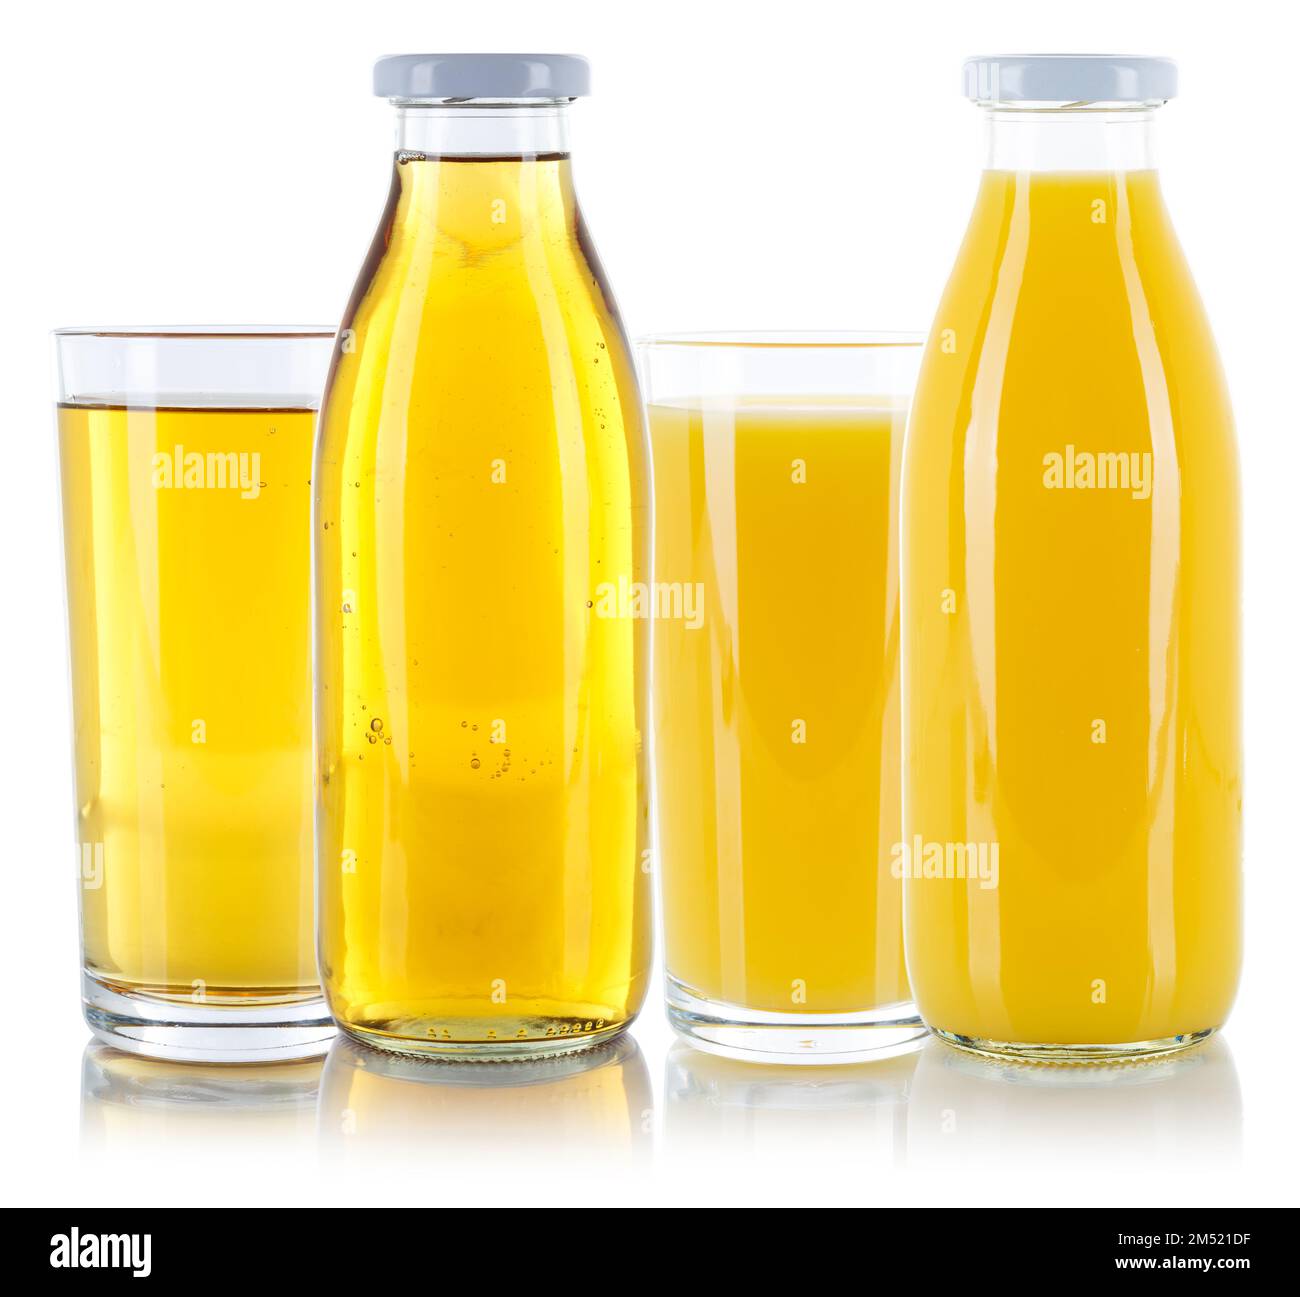 Apple and orange juice fresh glass bottle isolated on a white background Stock Photo